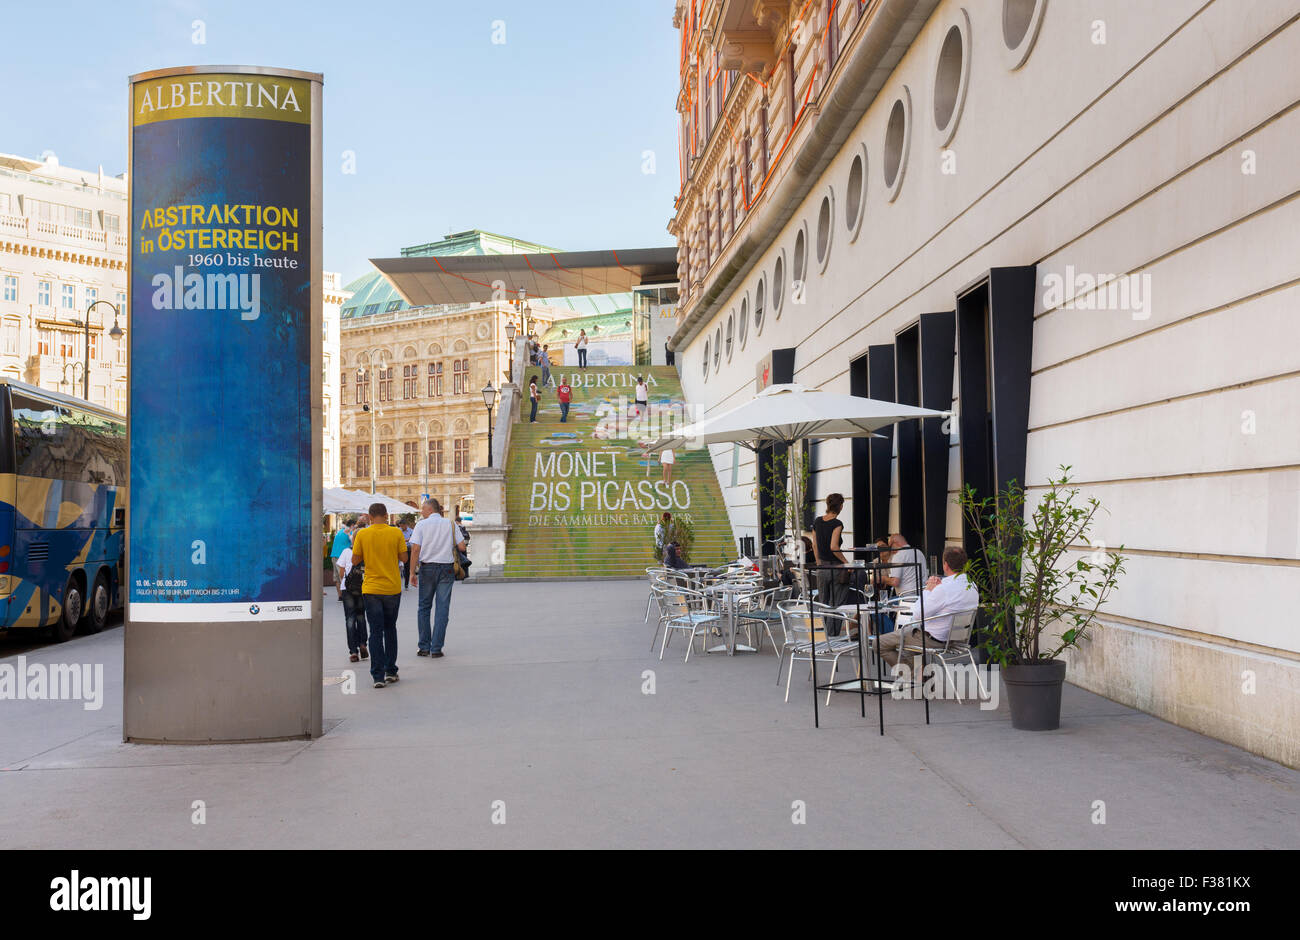 Wien, Österreich - 31. Juli 2015: Außenansicht des Albertina Museums während der Ausstellung der Maler Picasso und Monet bis zum 31. Juli 2 Stockfoto